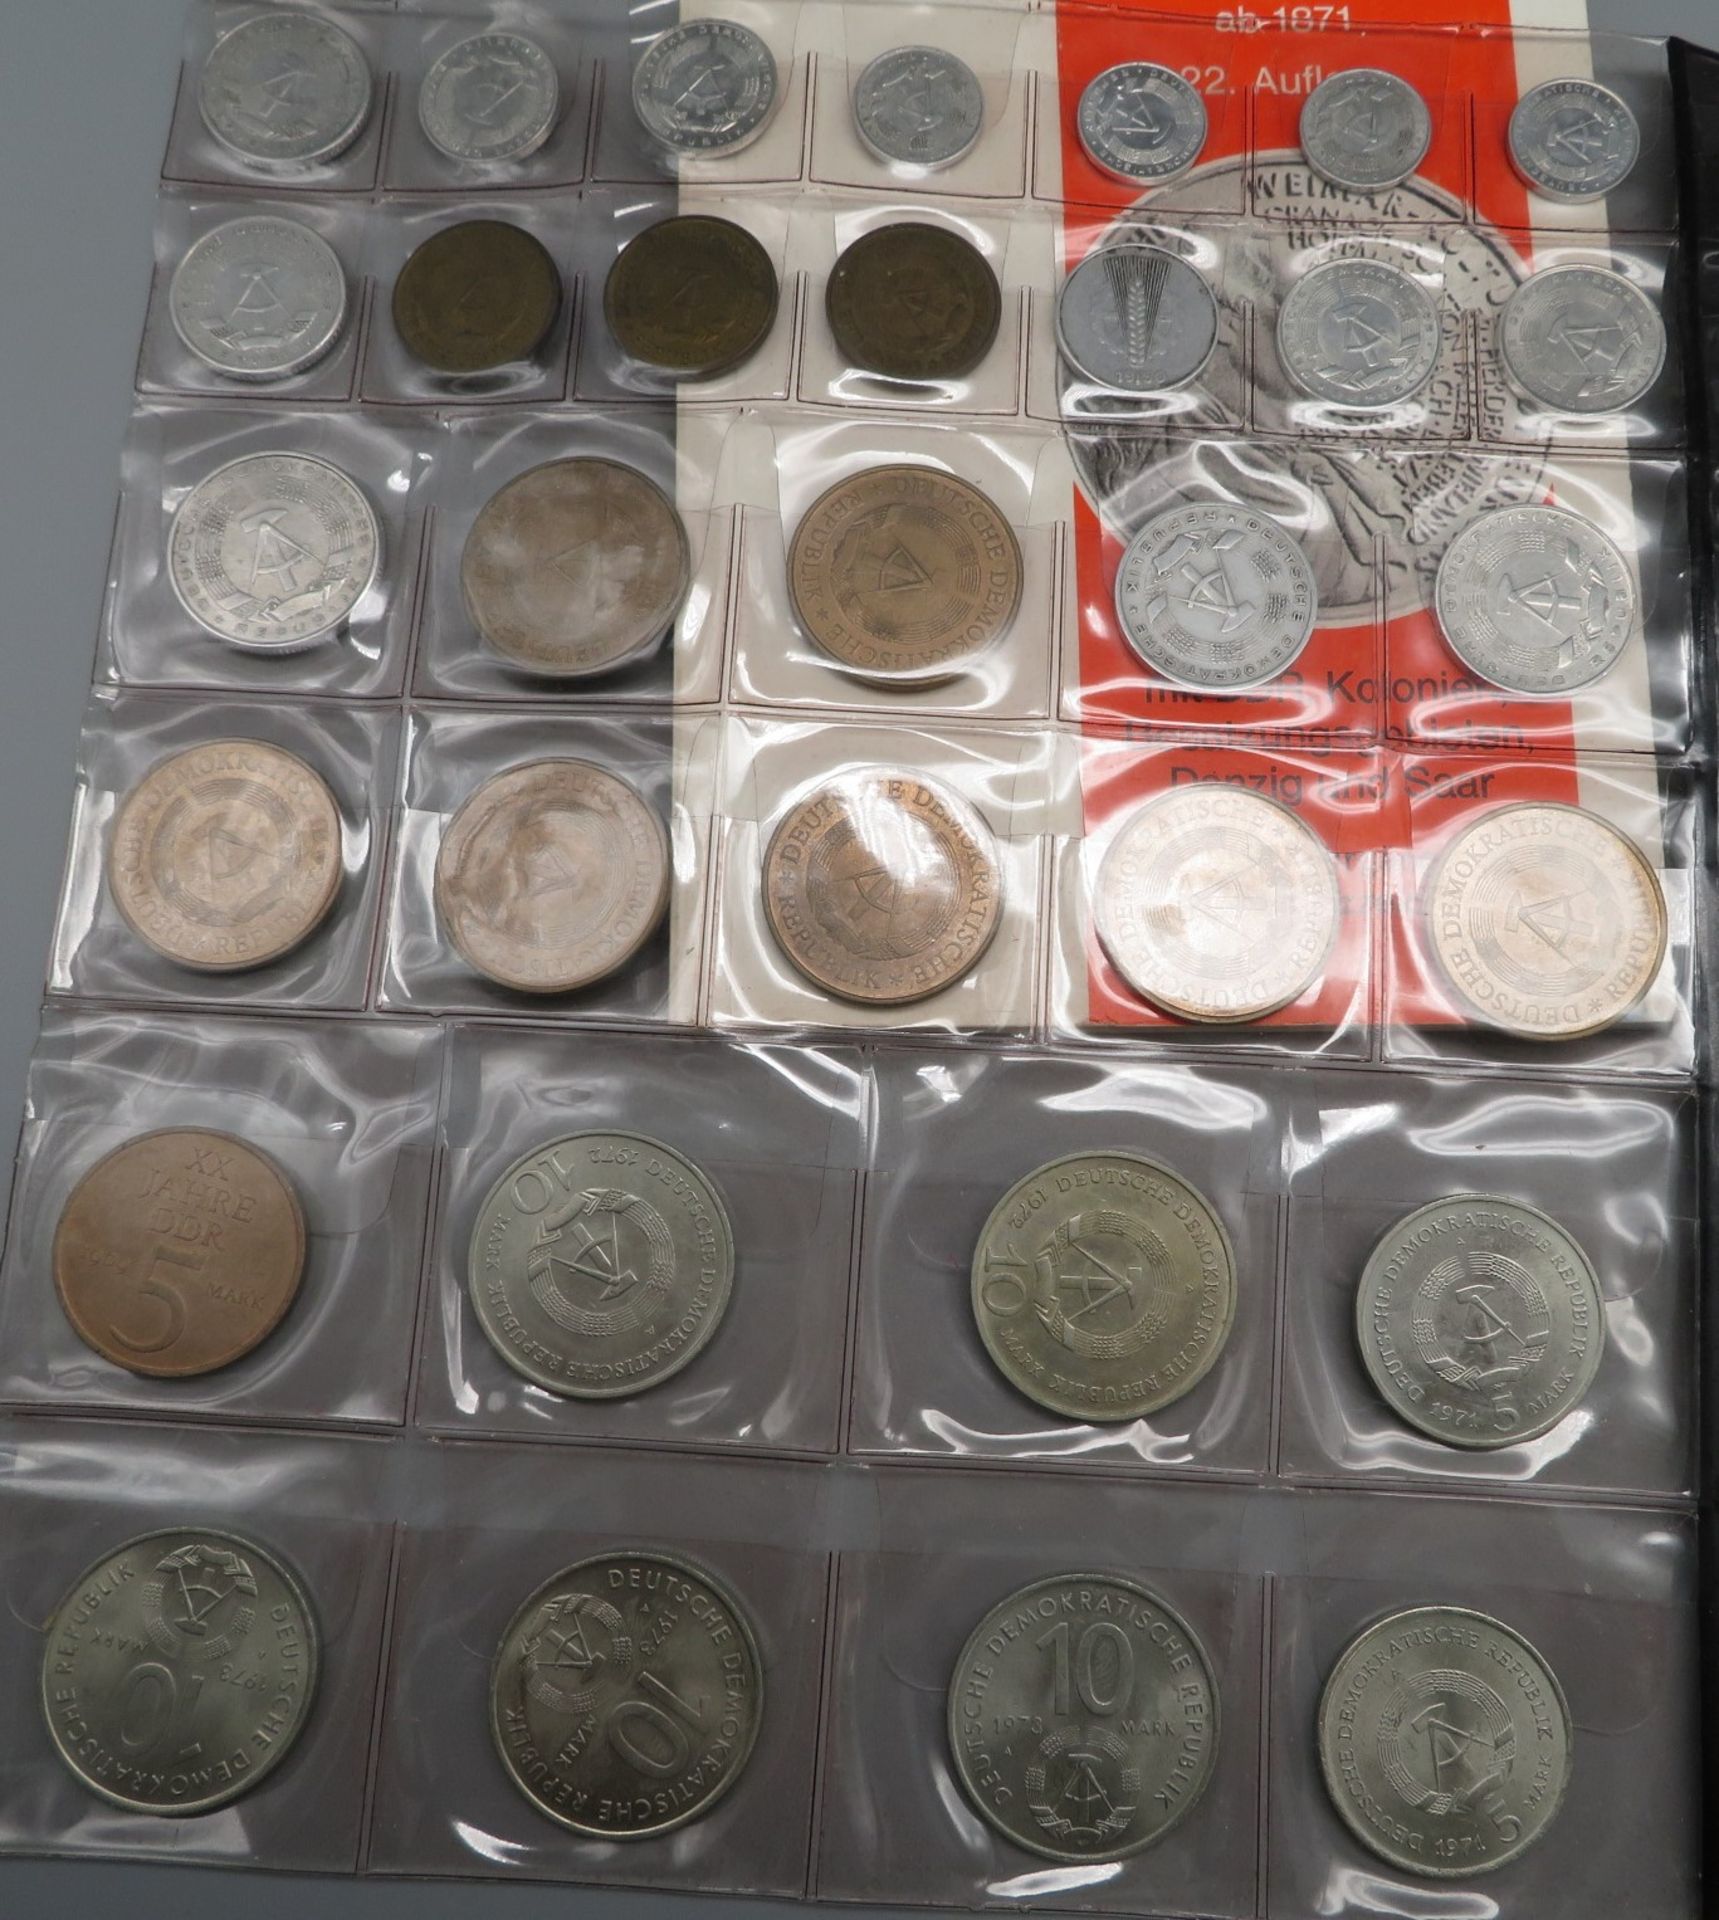 Konvolut von 50 Münzen, Münzenkatalog sowie 3 Medaillen, Deutsche Demokratische Republik, u.a. Jäge - Image 3 of 3